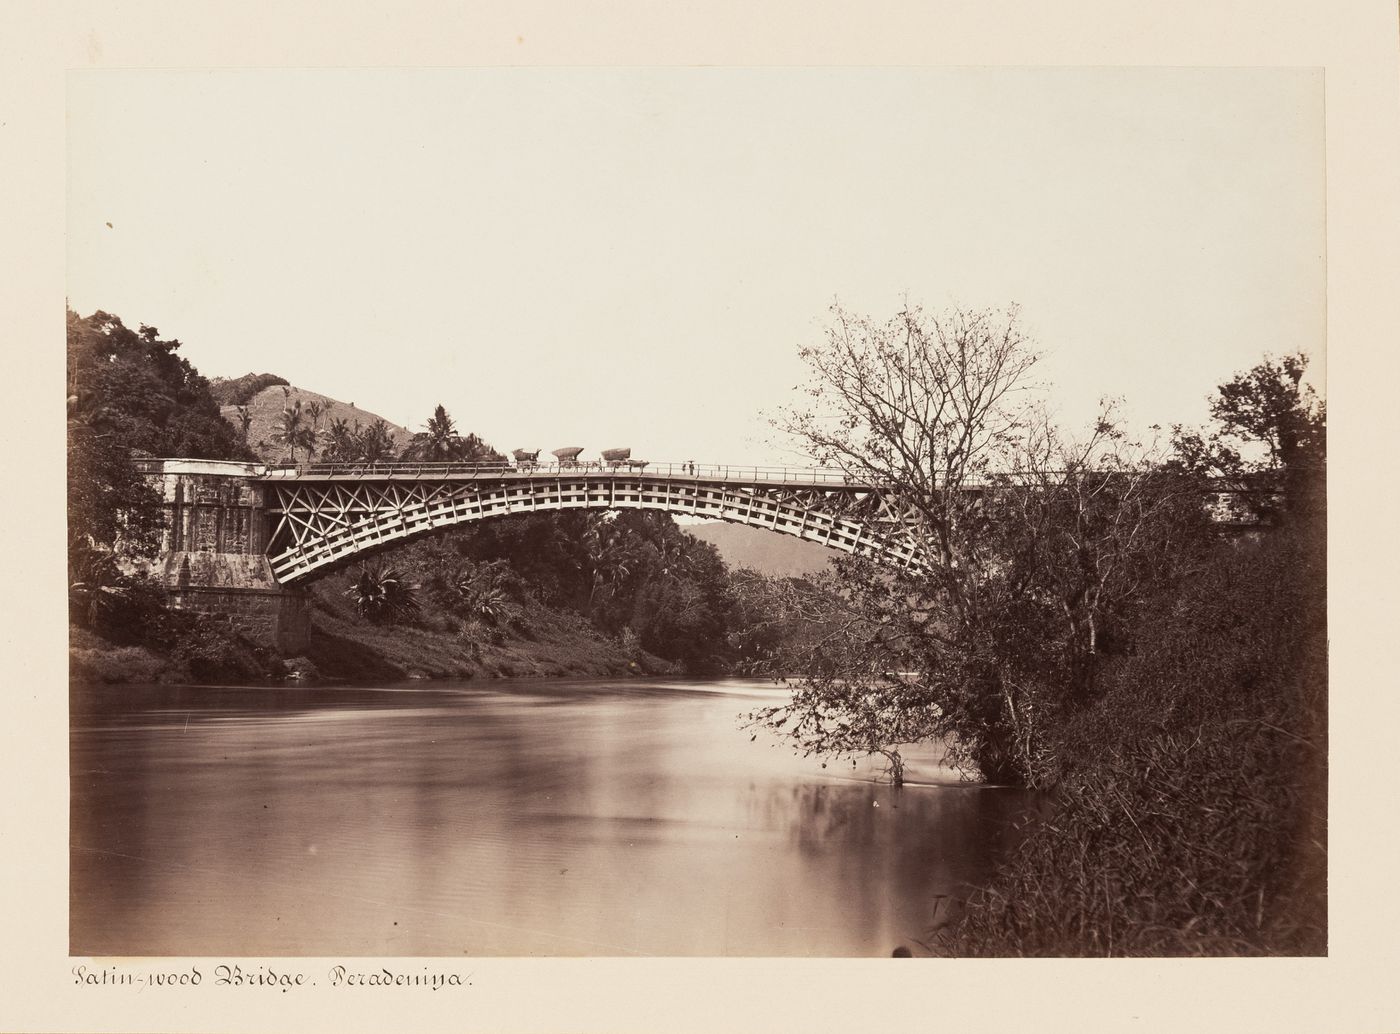 View of the Satinwood Bridge and the Mahaweli Ganga, Peradeniya, Ceylon (now Sri Lanka)